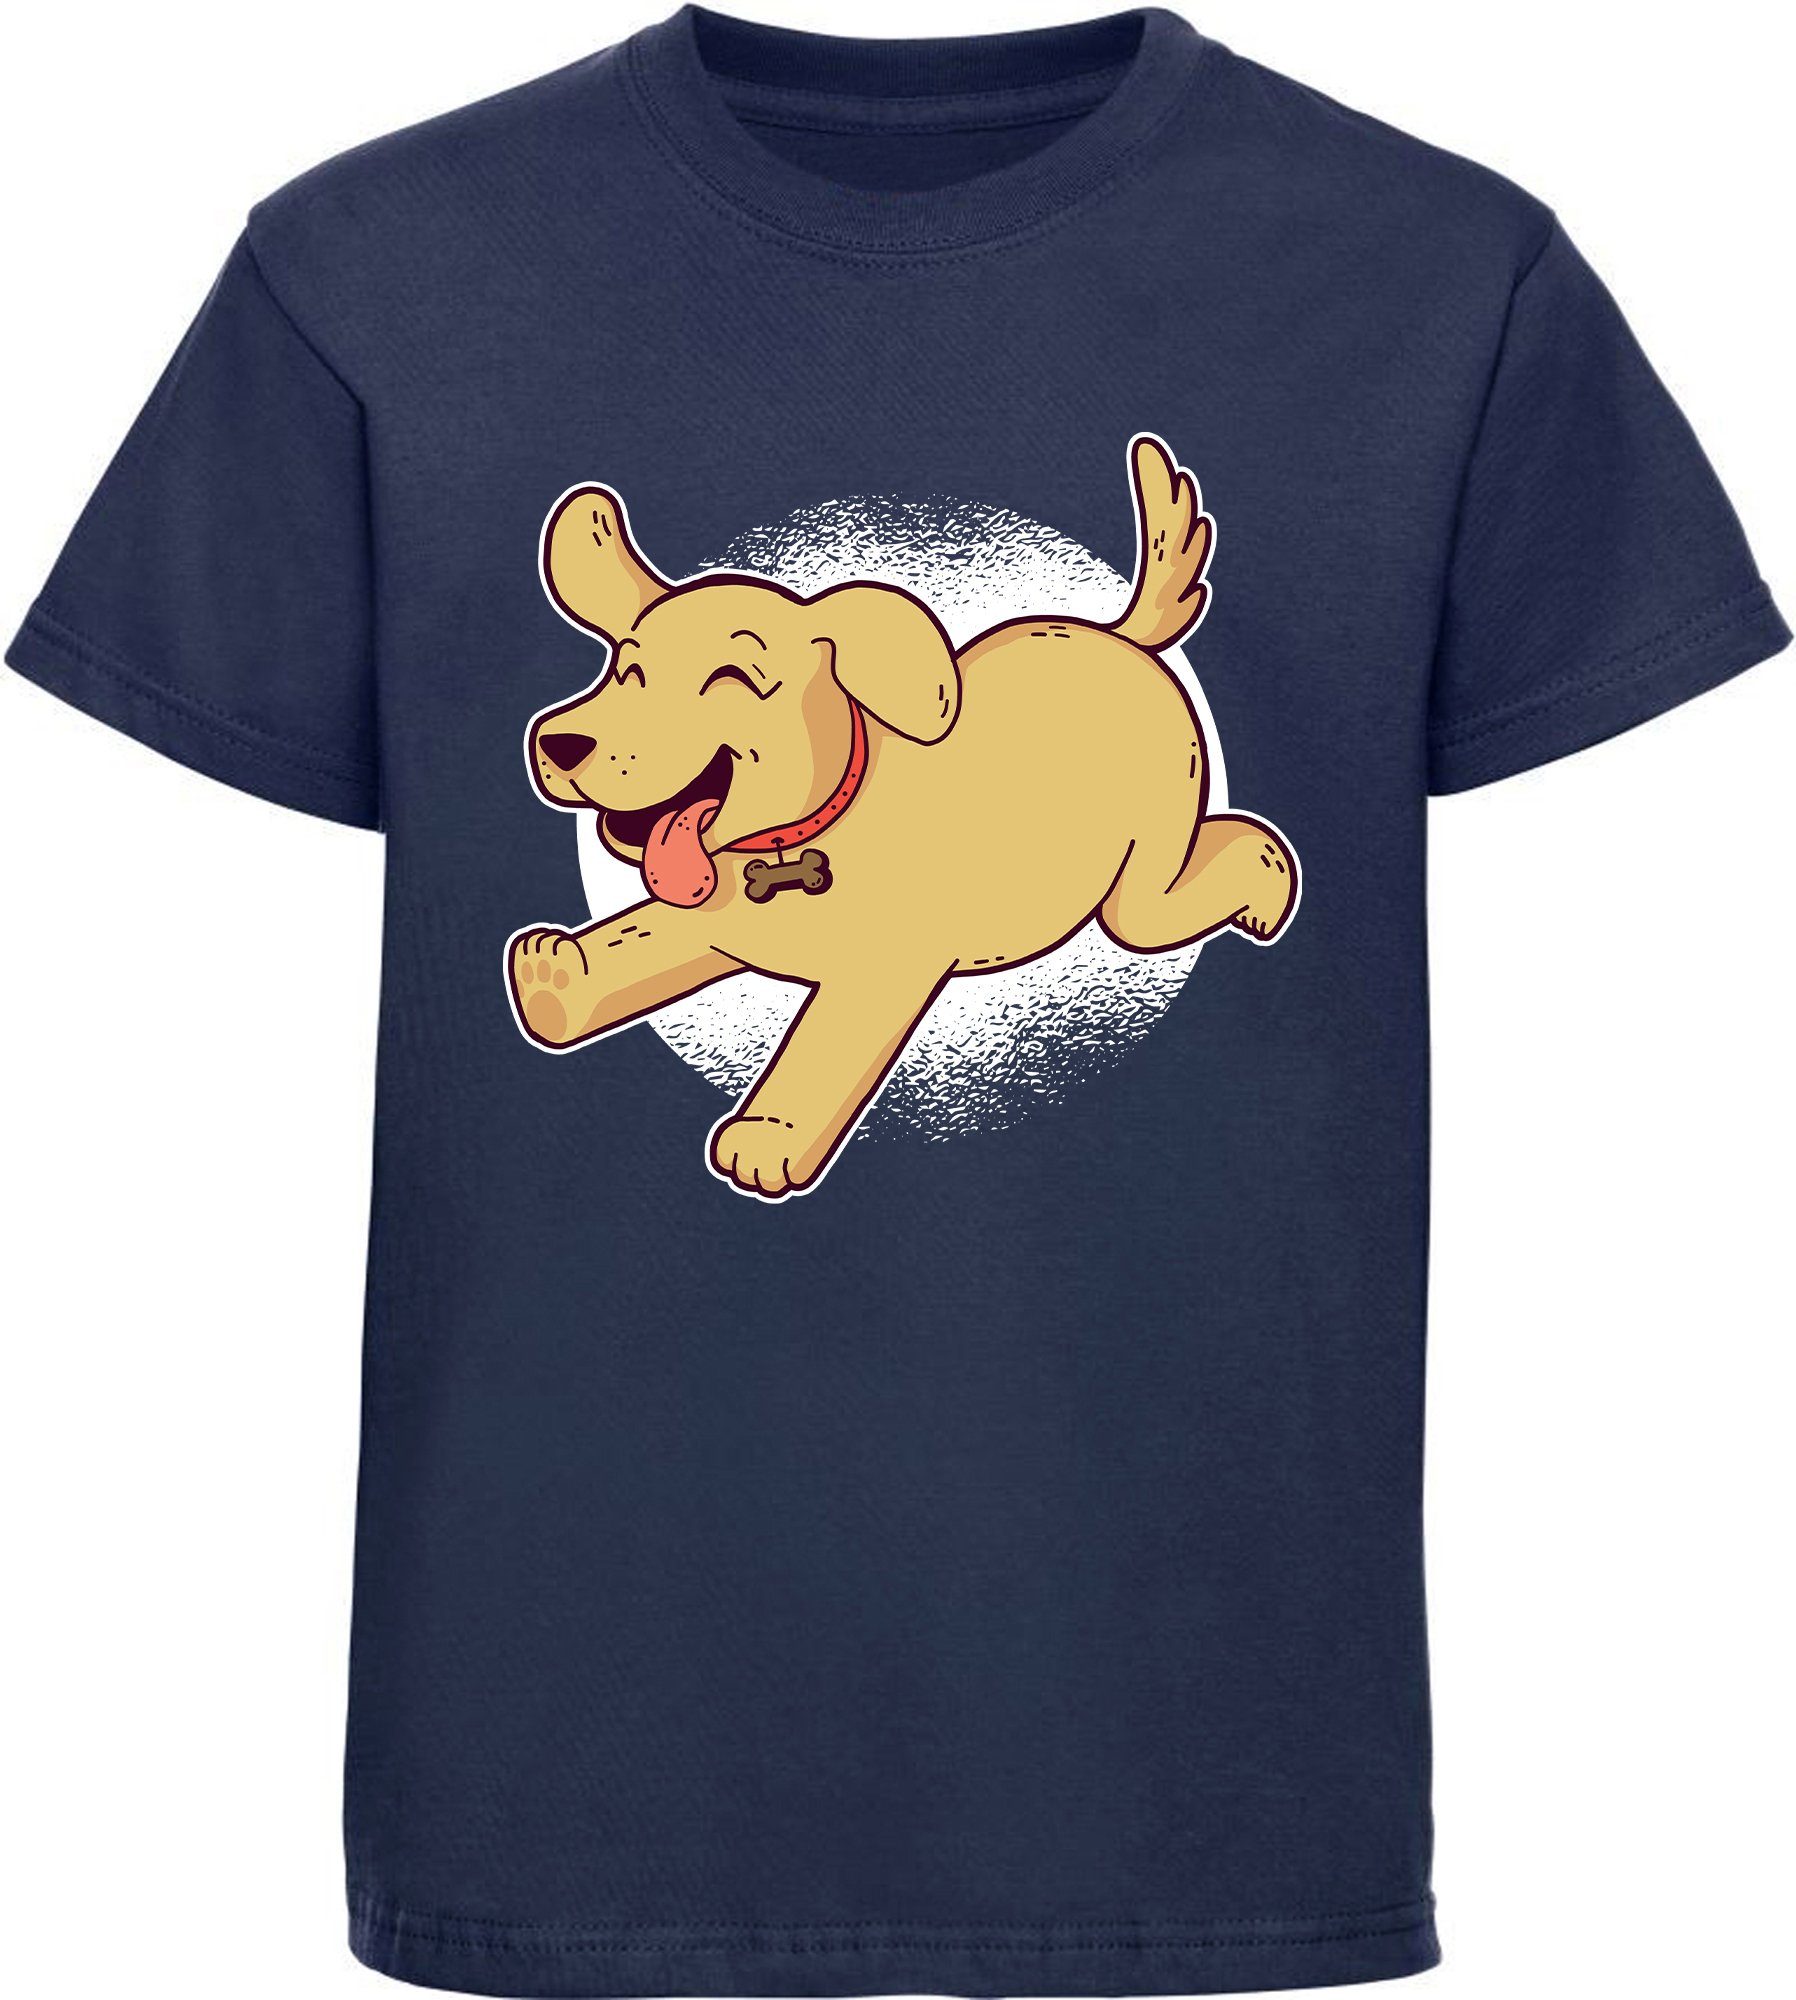 MyDesign24 T-Shirt Kinder Hunde Print Shirt bedruckt - Spielender Labrador Welpe Baumwollshirt mit Aufdruck, i248 navy blau